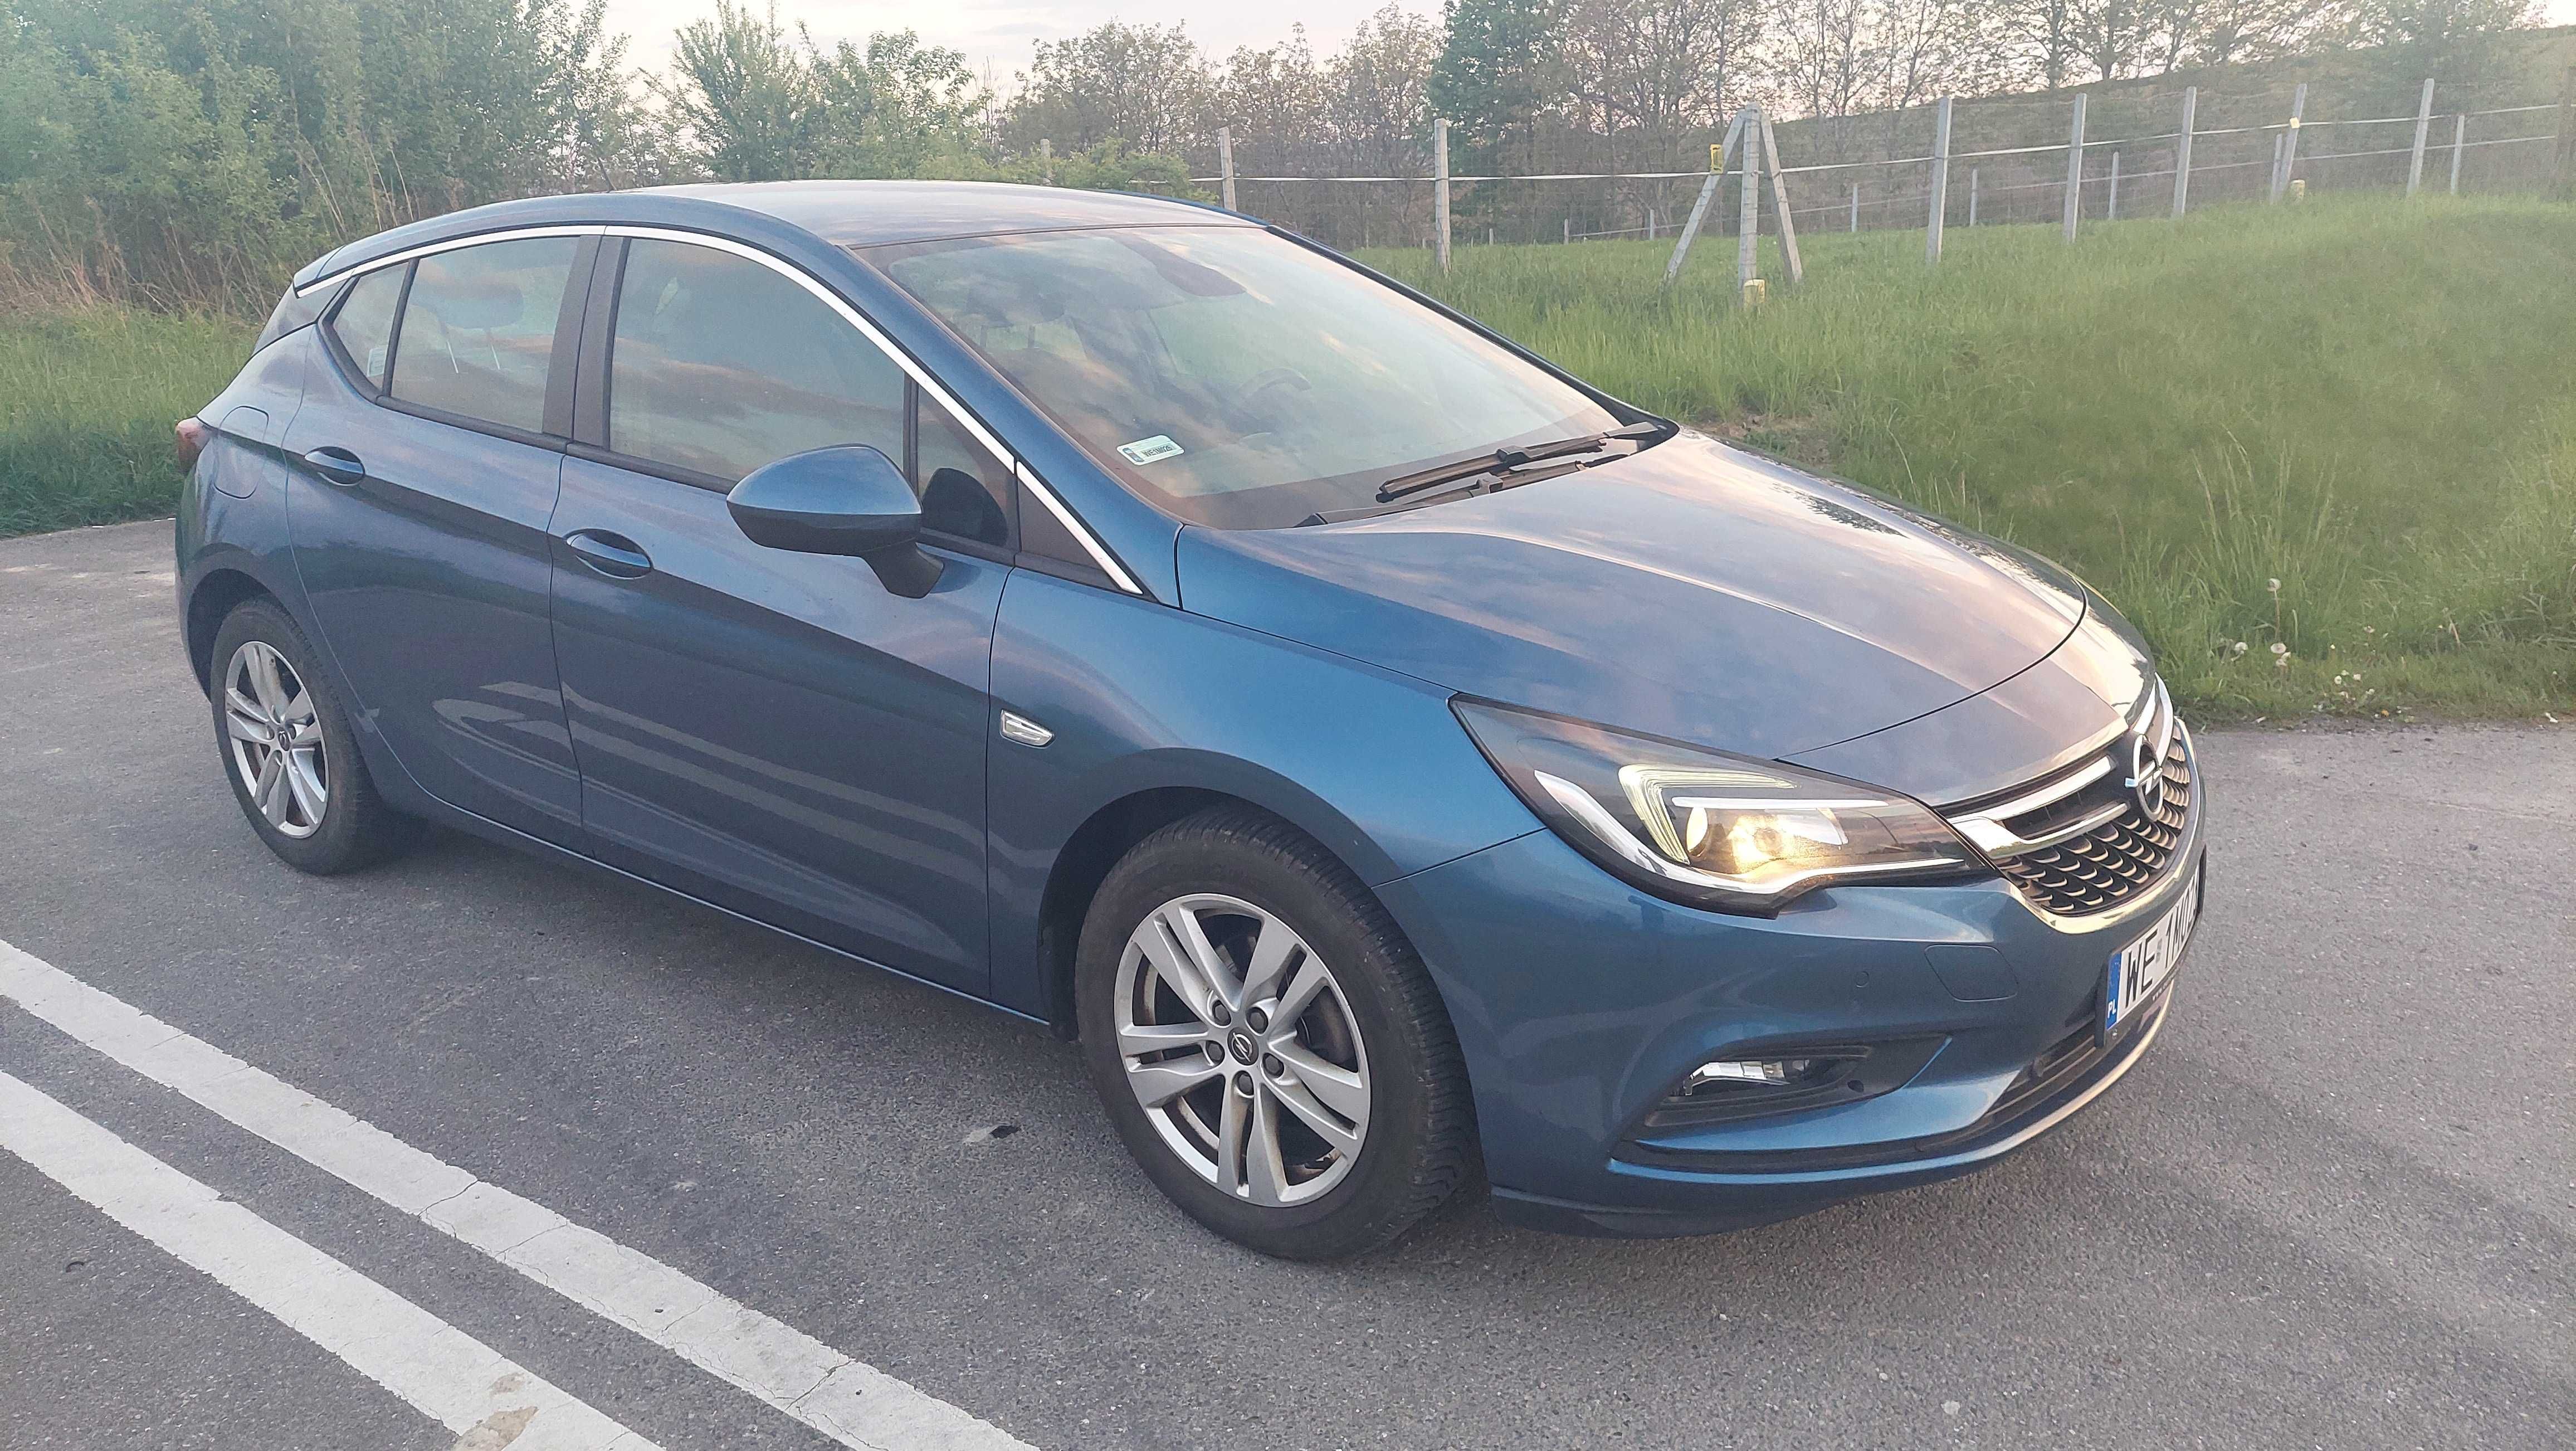 Sprzedam Opel Astra 2016r, 1,4 benzyna. Salon Polska  - bezwypadkowa